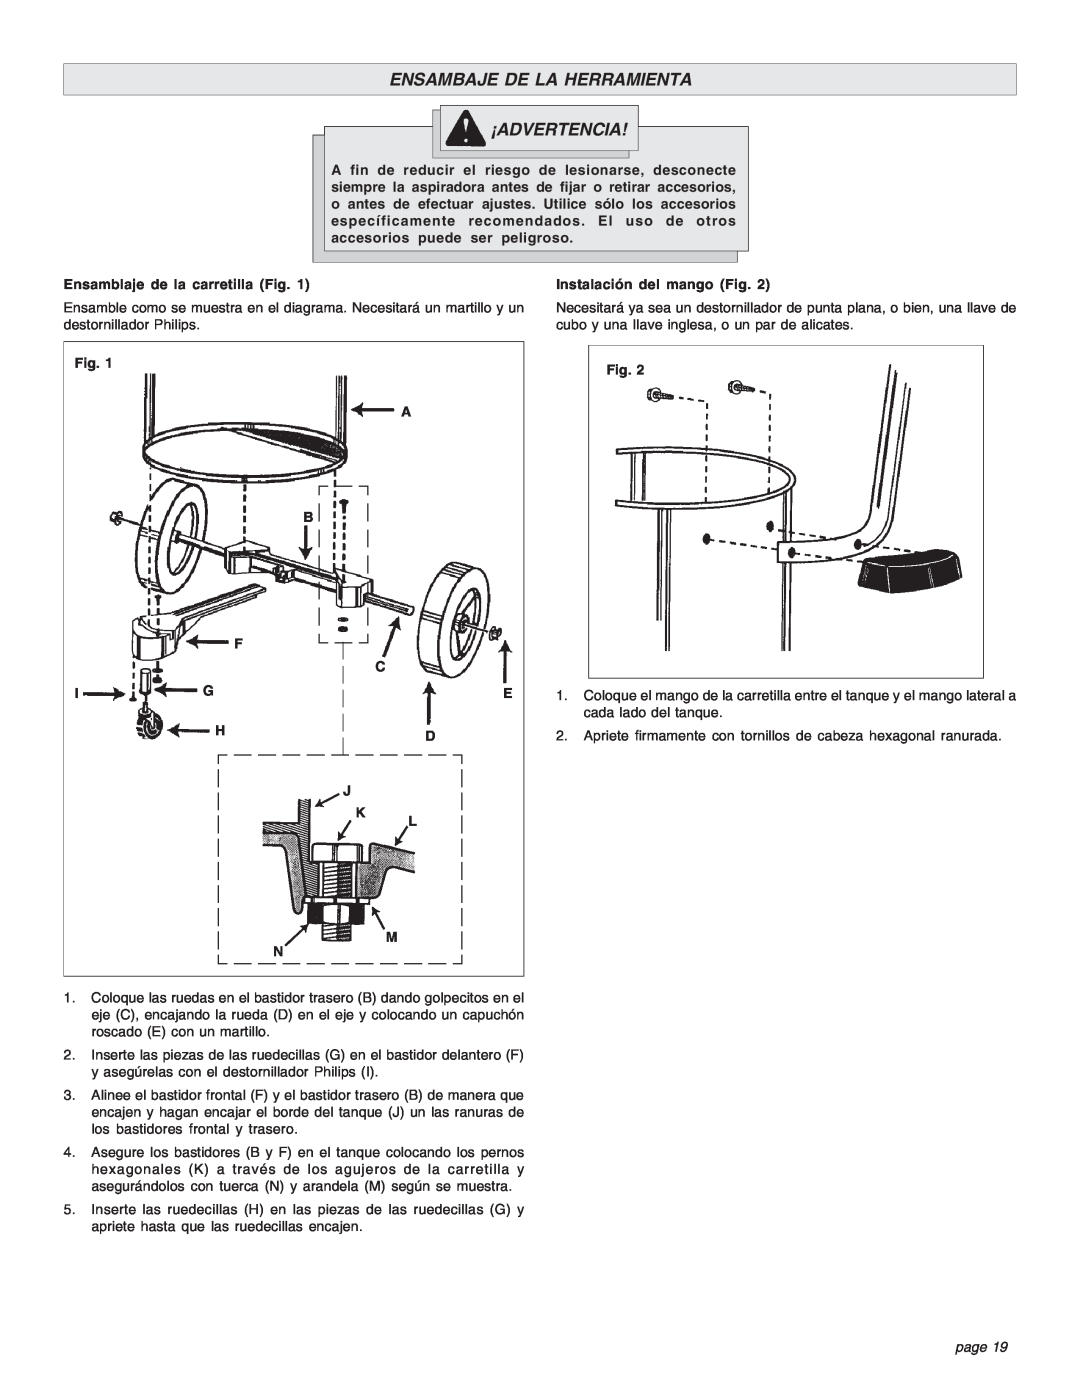 Intec 8940-20 manual Ensambaje De La Herramienta ¡Advertencia, page 